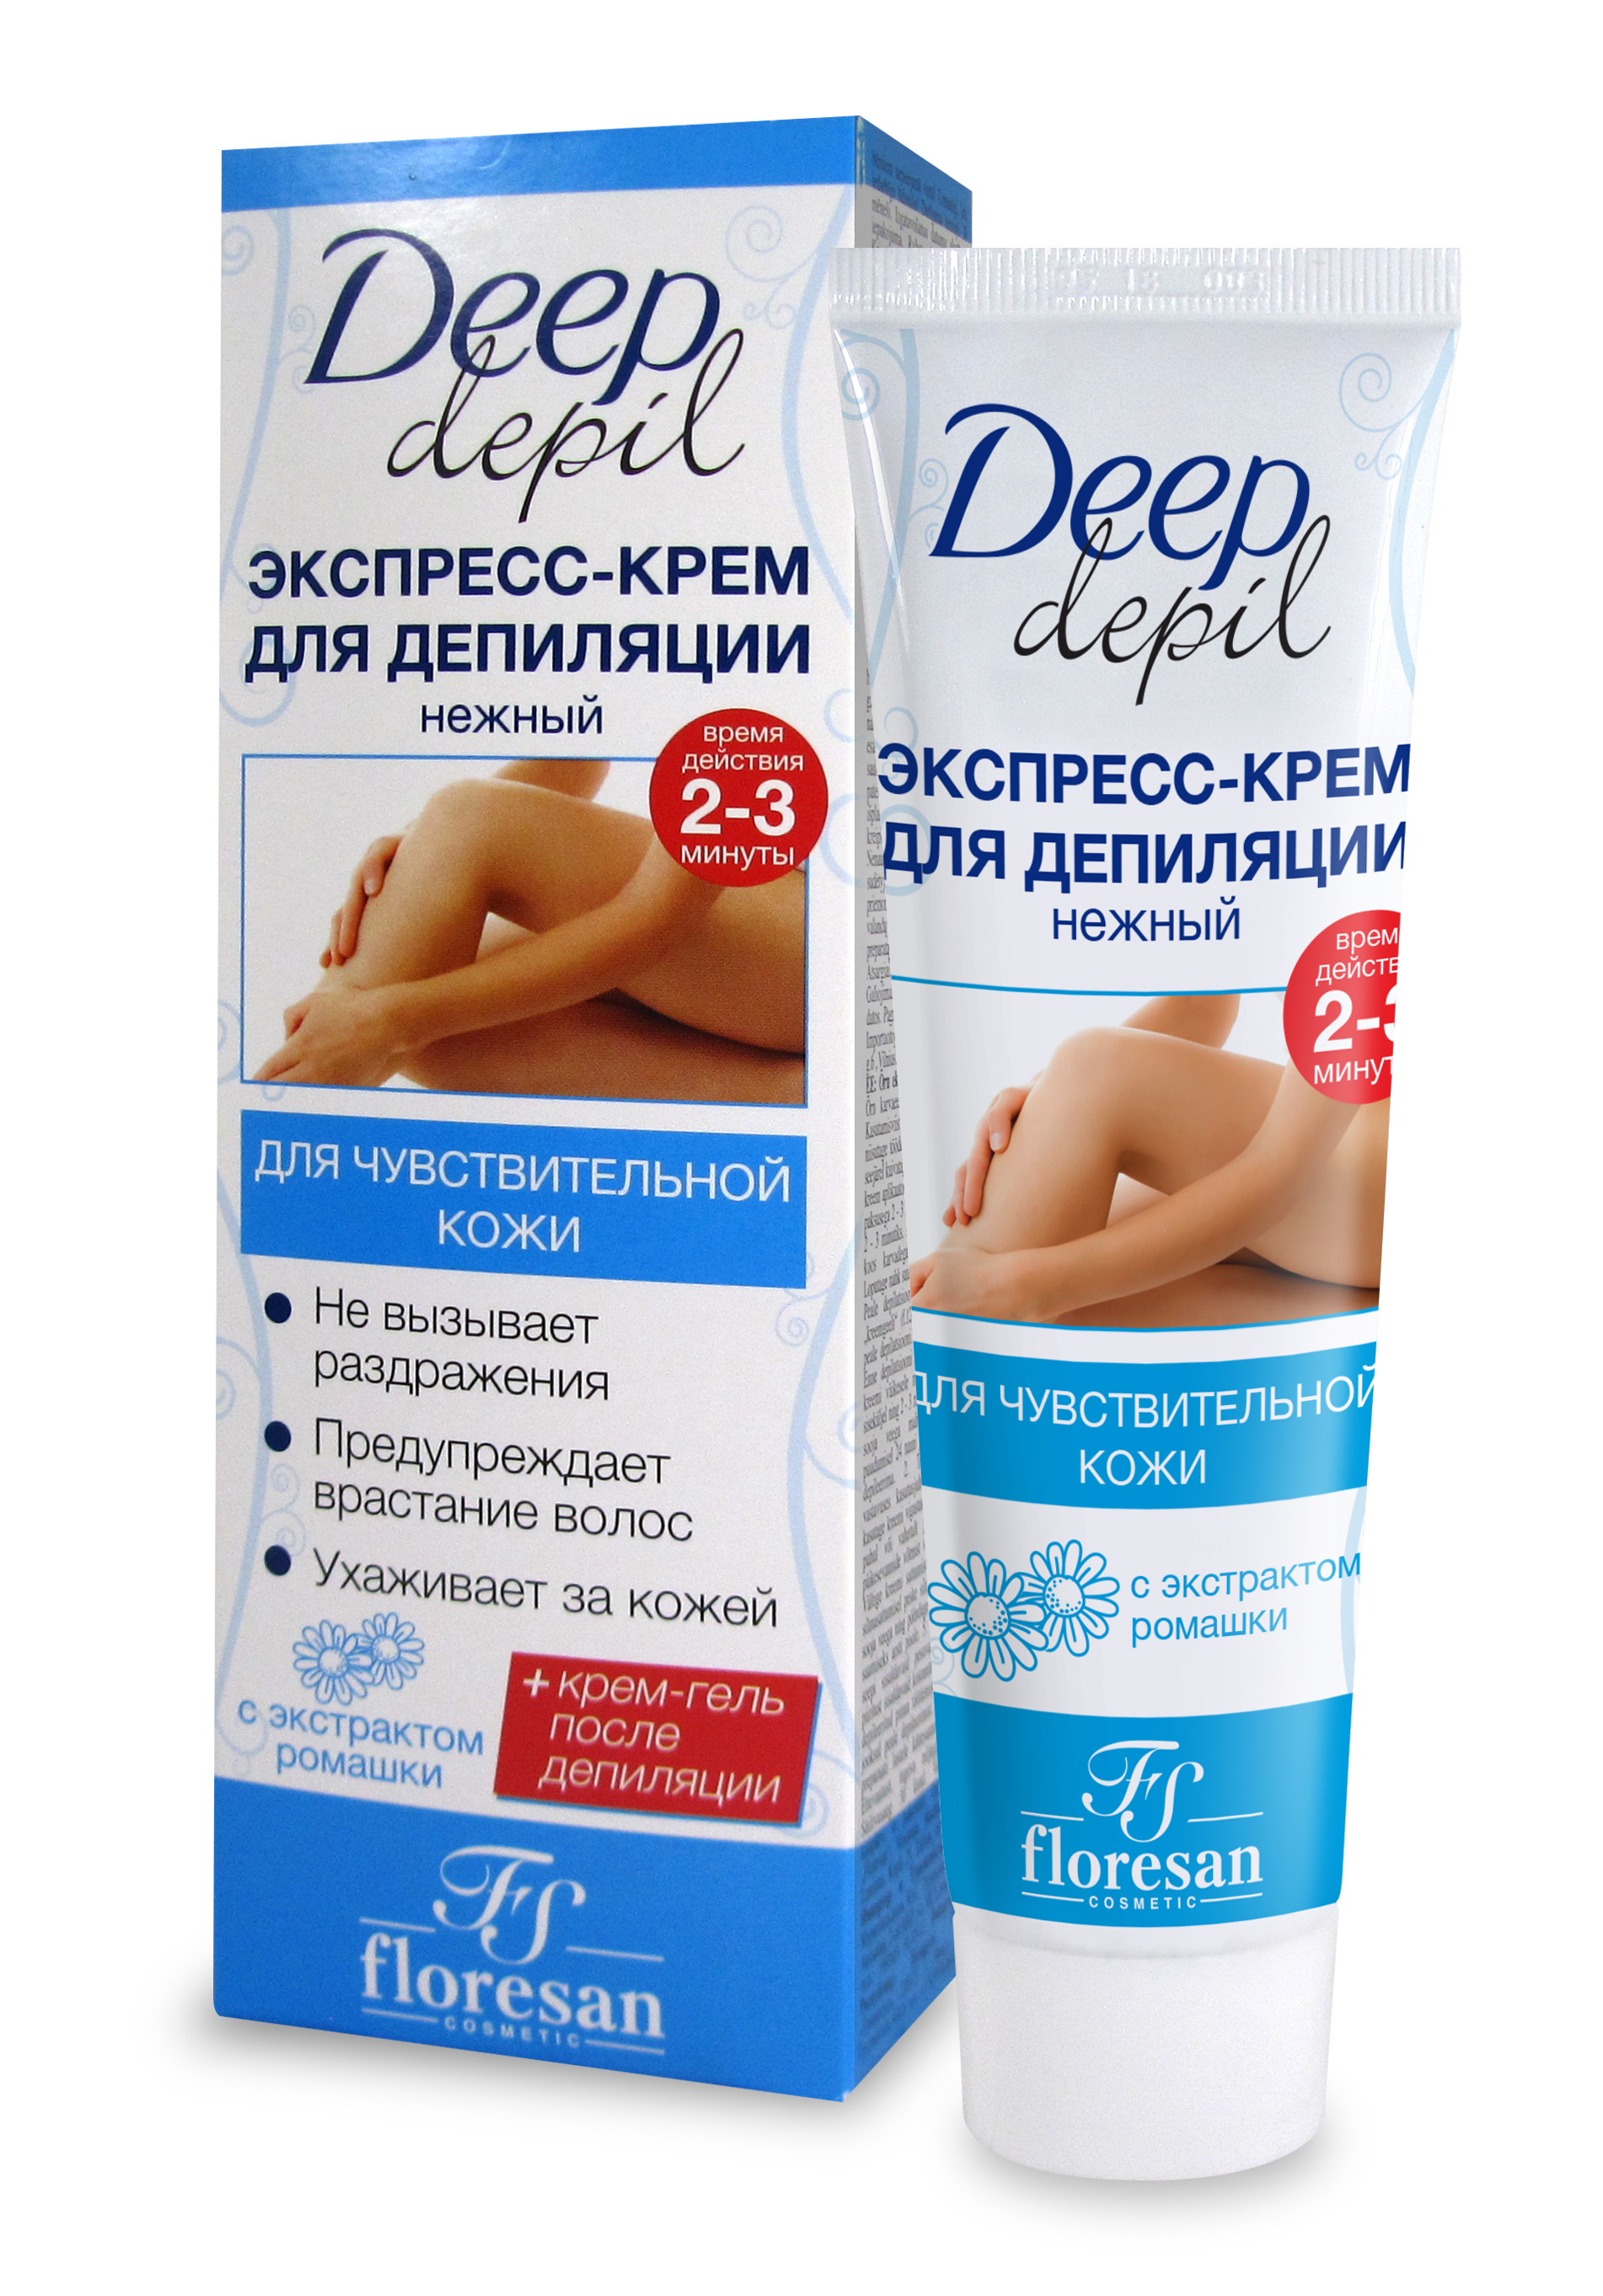 Нежный экспресс-крем для мягкого удаления волос для чувствительной кожи, Deep Depil, Флоресан, 75 мл